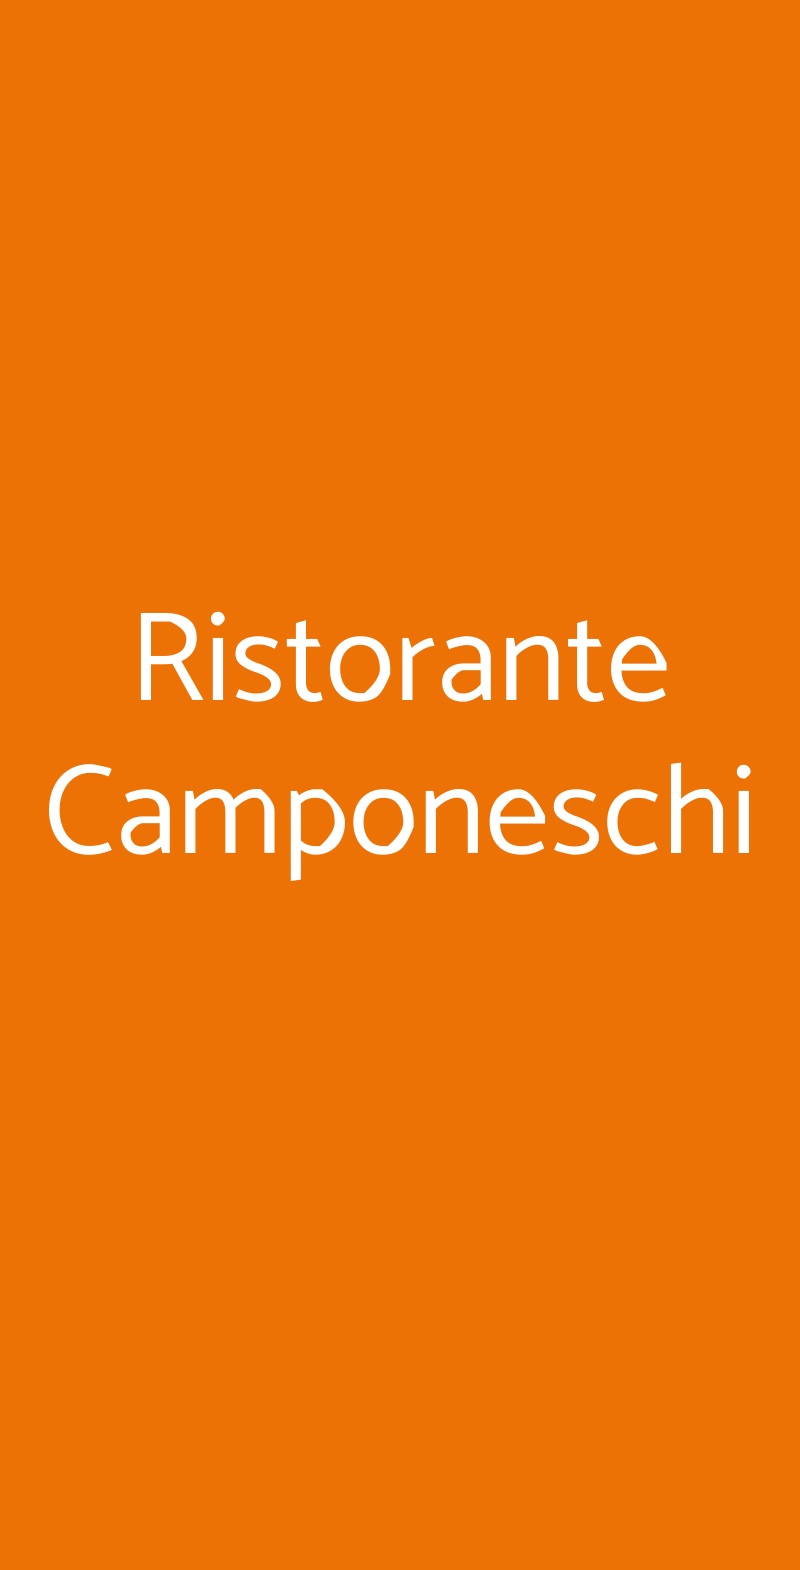 Ristorante Camponeschi Roma menù 1 pagina